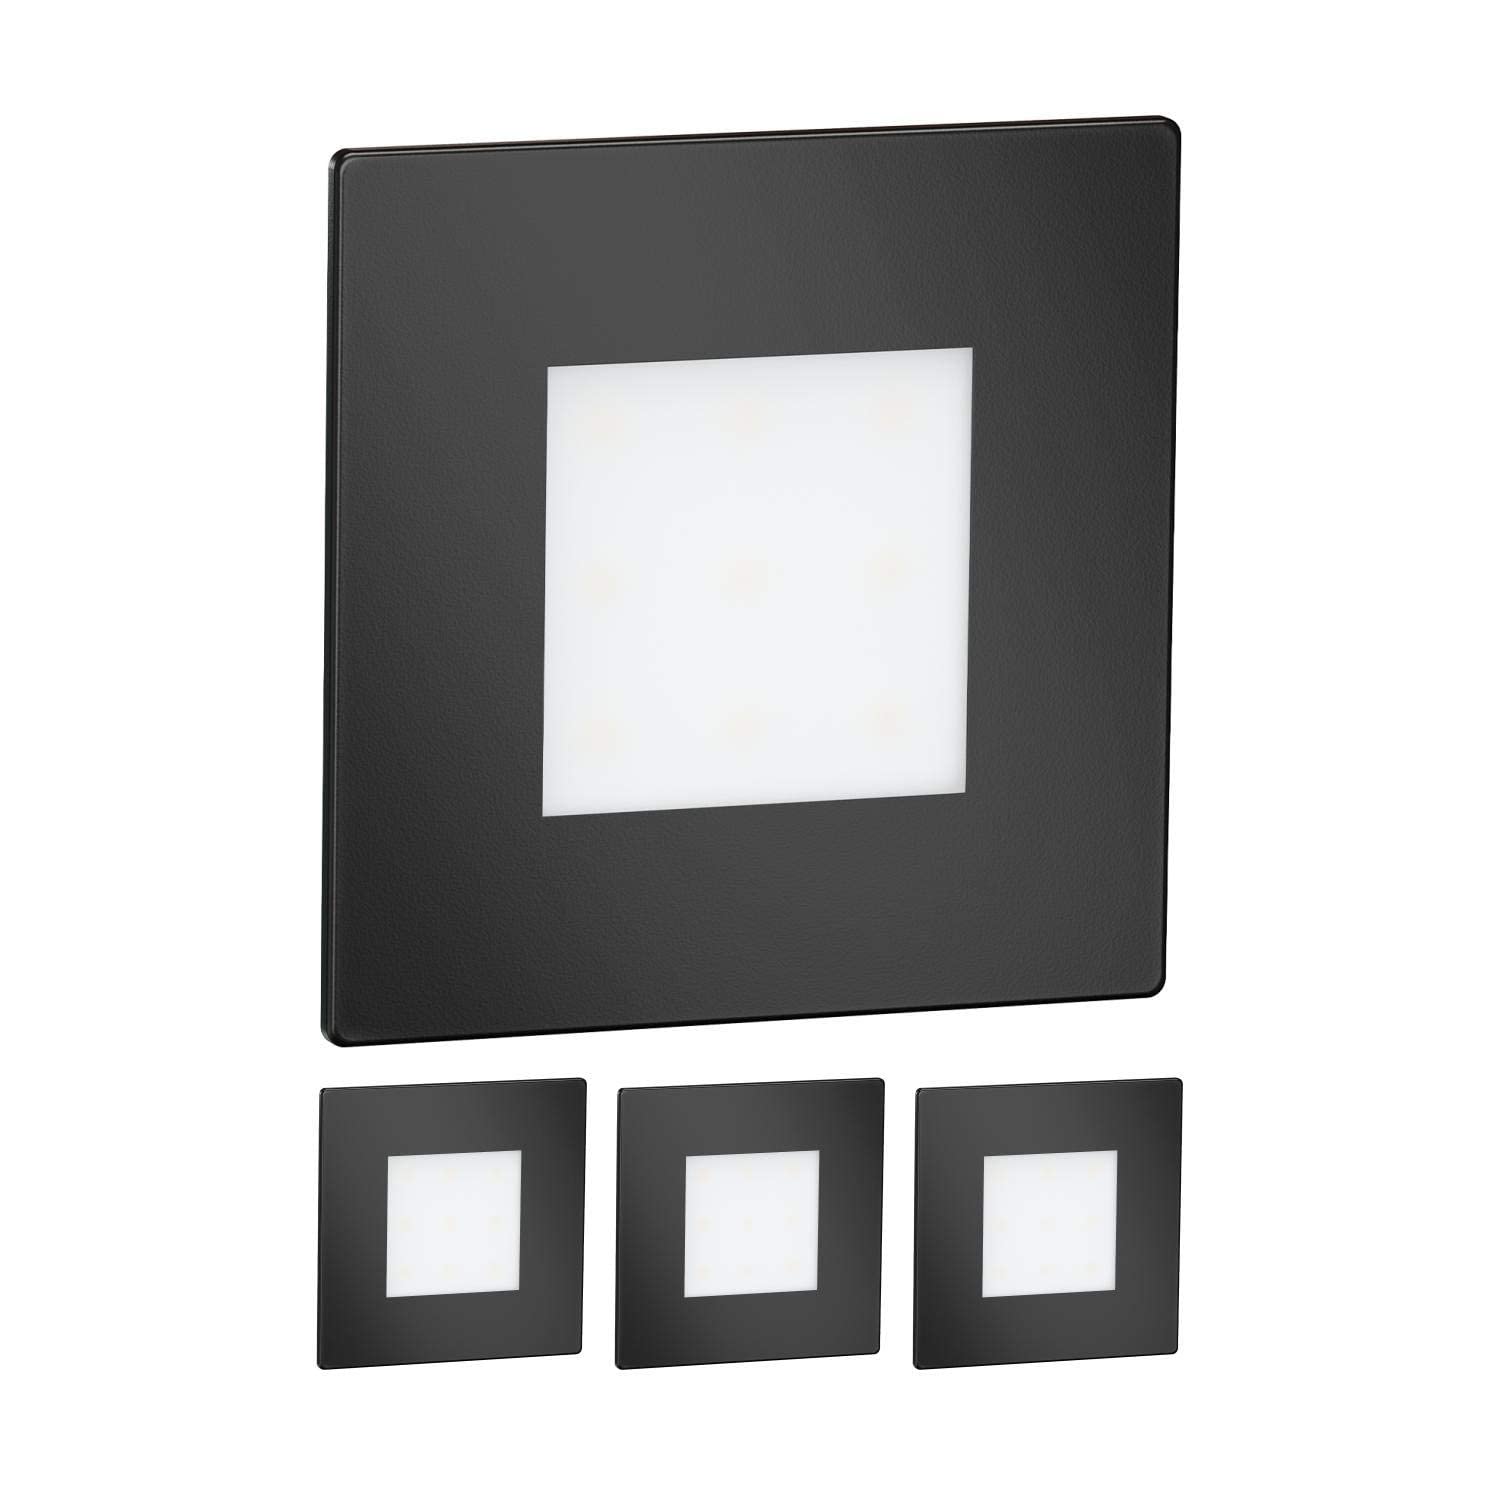 ledscom.de 4 Stück LED Treppenlicht/Wandeinbauleuchte FEX für innen und außen, eckig, schwarz, 85 x 85mm, kaltweiß